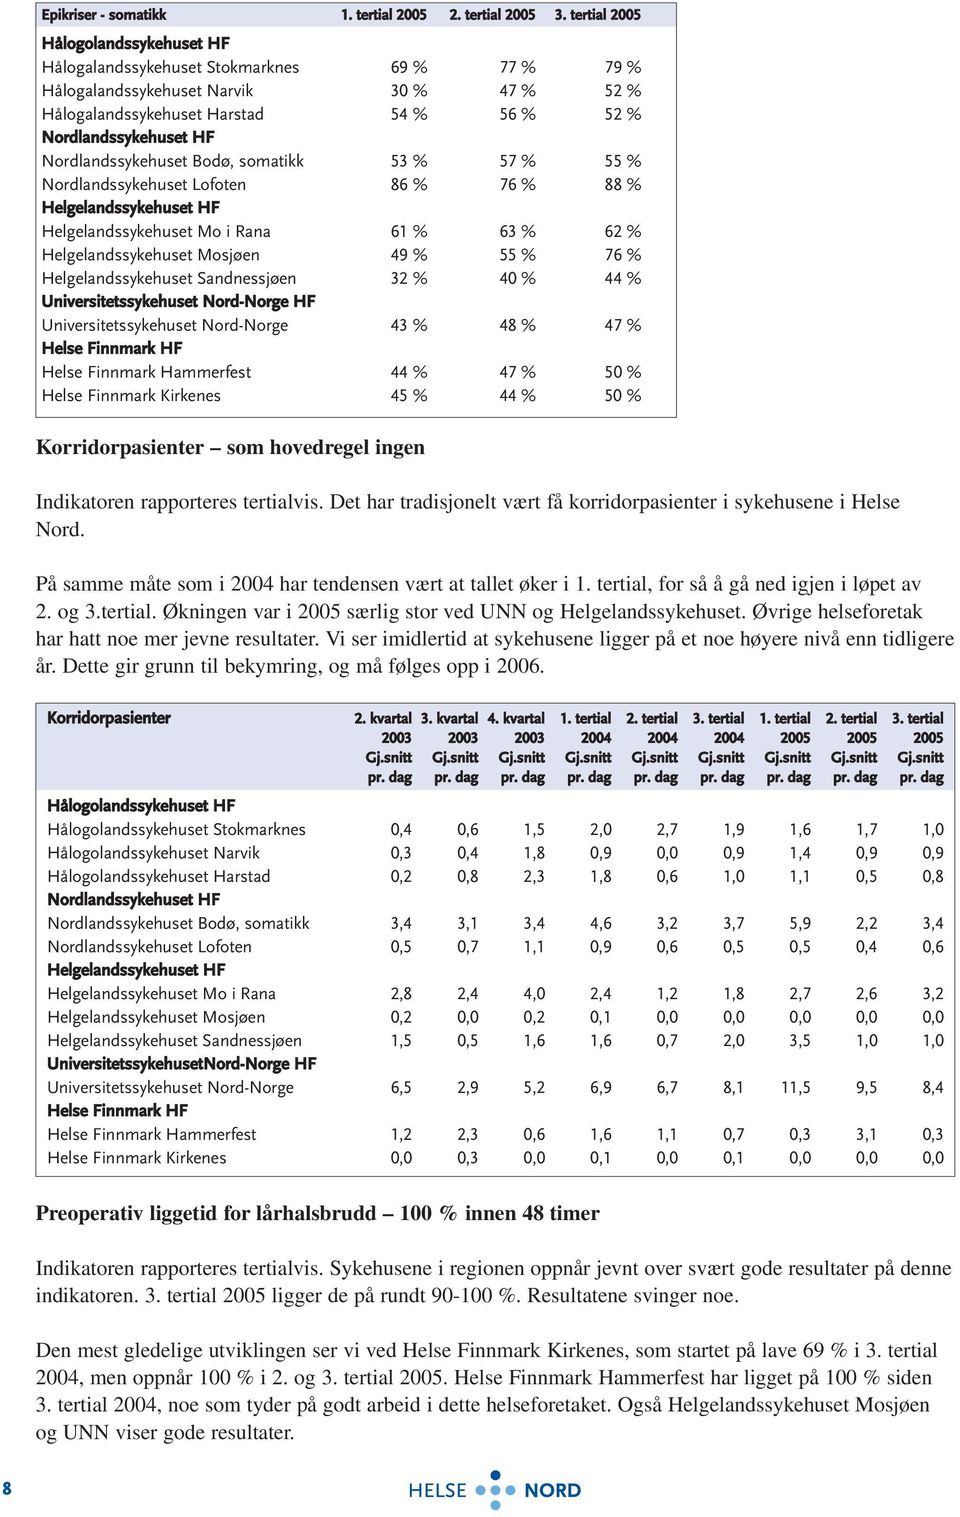 Nordlandssykehuset Bodø, somatikk 53 % 57 % 55 % Nordlandssykehuset Lofoten 86 % 76 % 88 % Helgelandssykehuset HF Helgelandssykehuset Mo i Rana 61 % 63 % 62 % Helgelandssykehuset Mosjøen 49 % 55 % 76